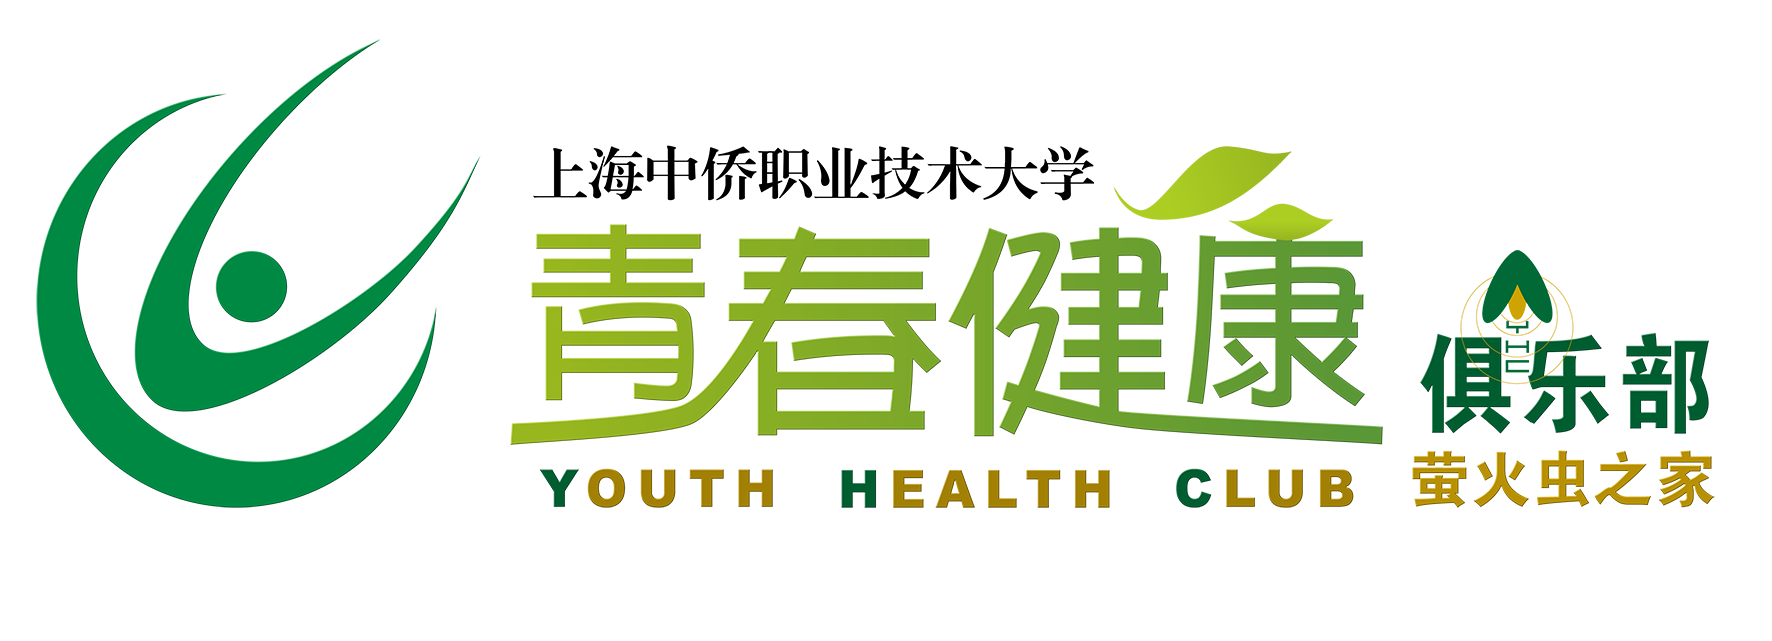 上海中侨职业技术大学青春健康俱乐部